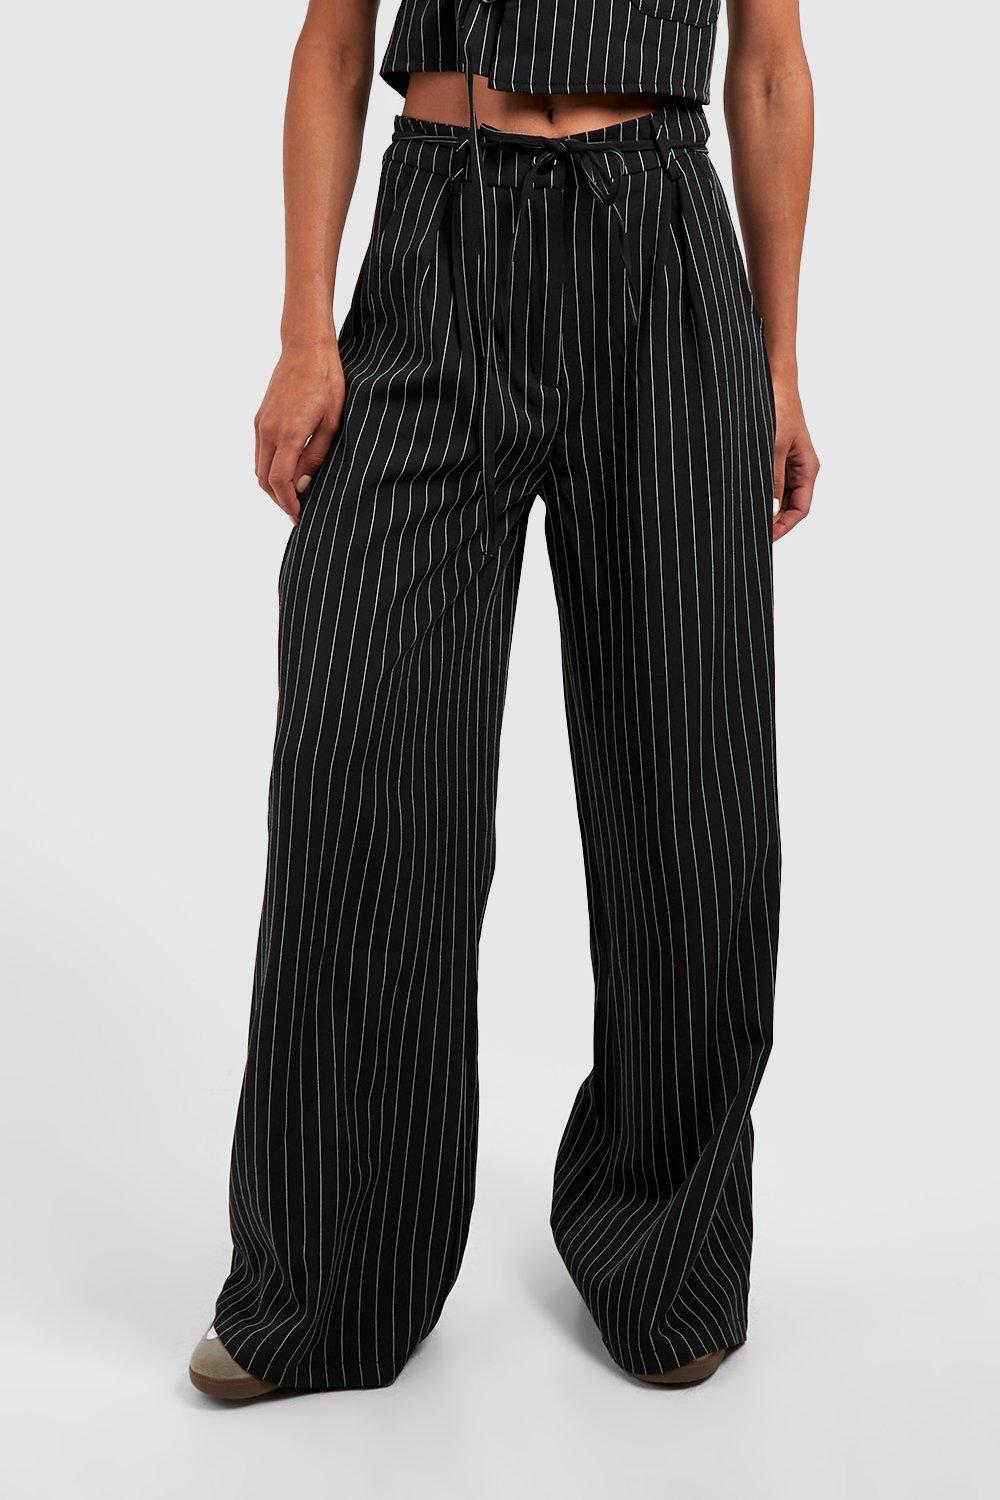 Black Crepe Stripe Tie Waist Wide Leg Pants  Wide leg trouser, Fancy  outfits, Striped tie